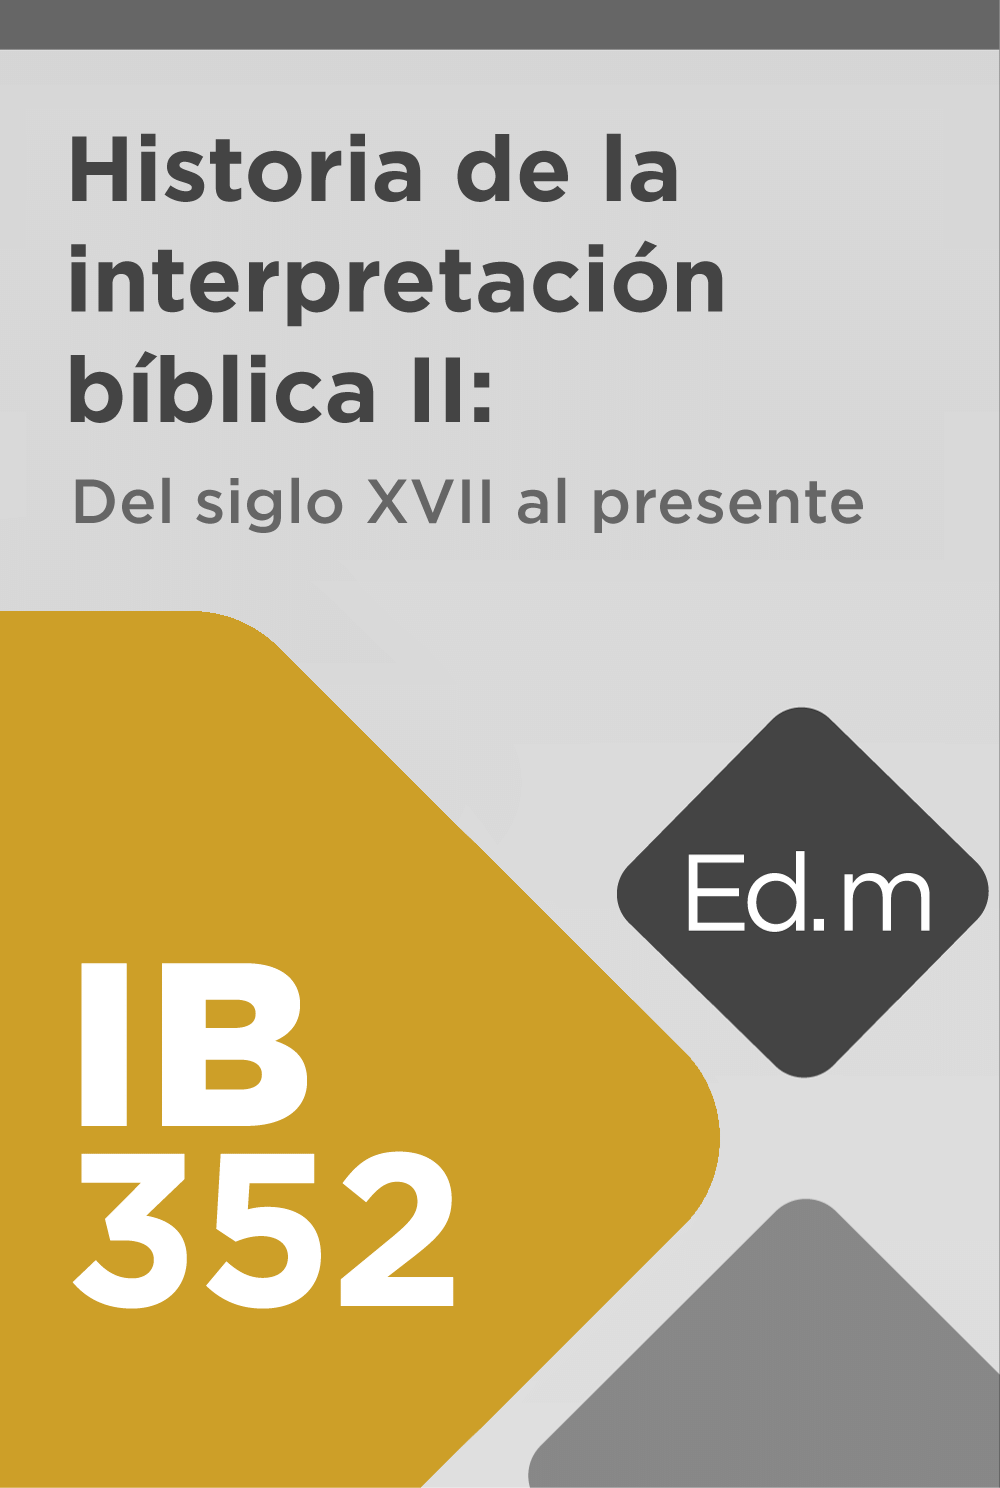 Ed. Móvil: IB352 Historia de la interpretación bíblica II:  Del siglo XVII al presente